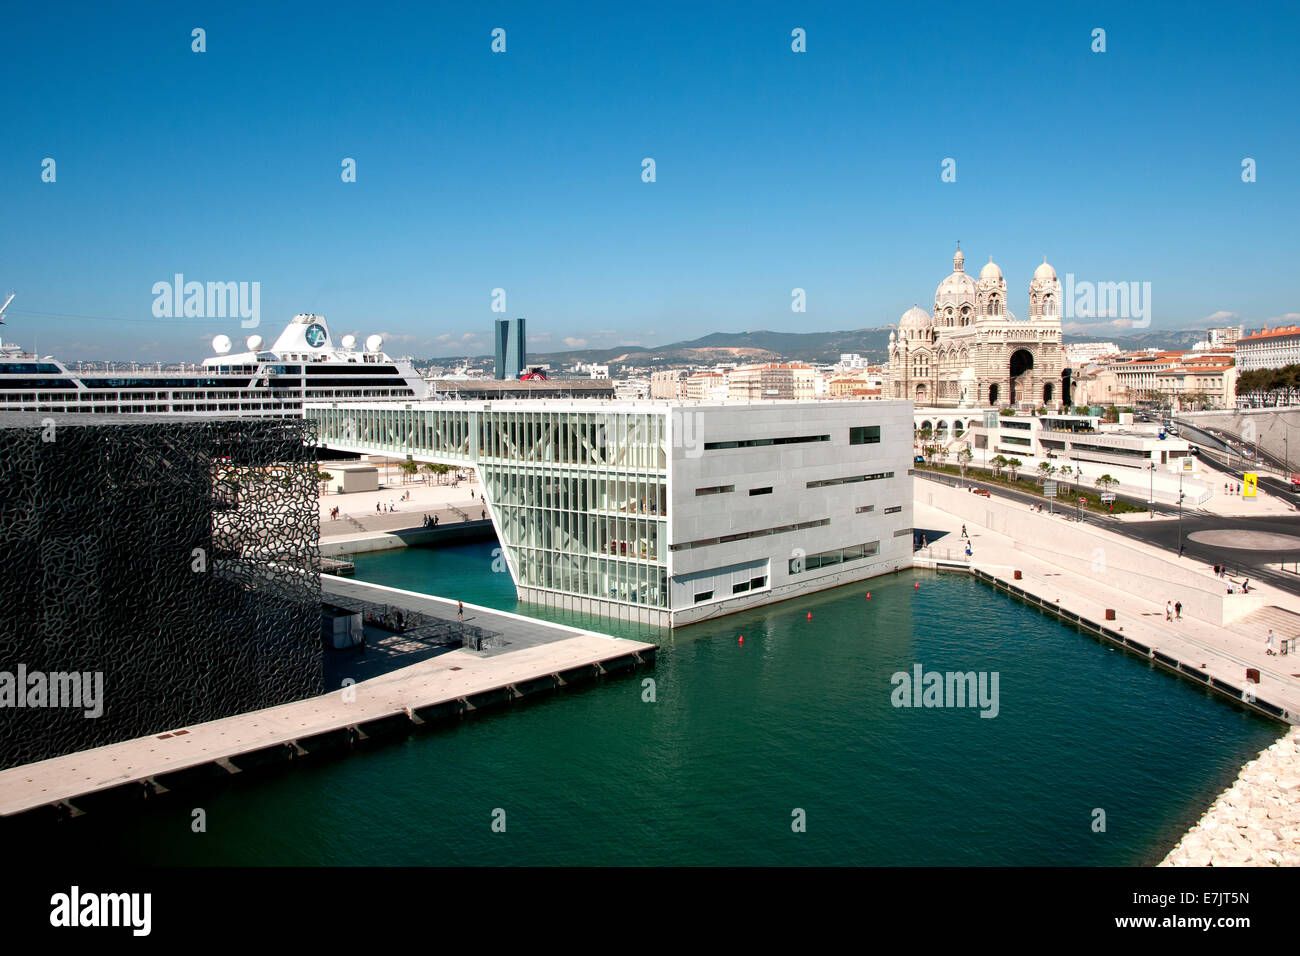 Francia: parte de Marsella - Museo de nuevo desarrollo, el puerto, el crucero de la catedral. Foto de stock